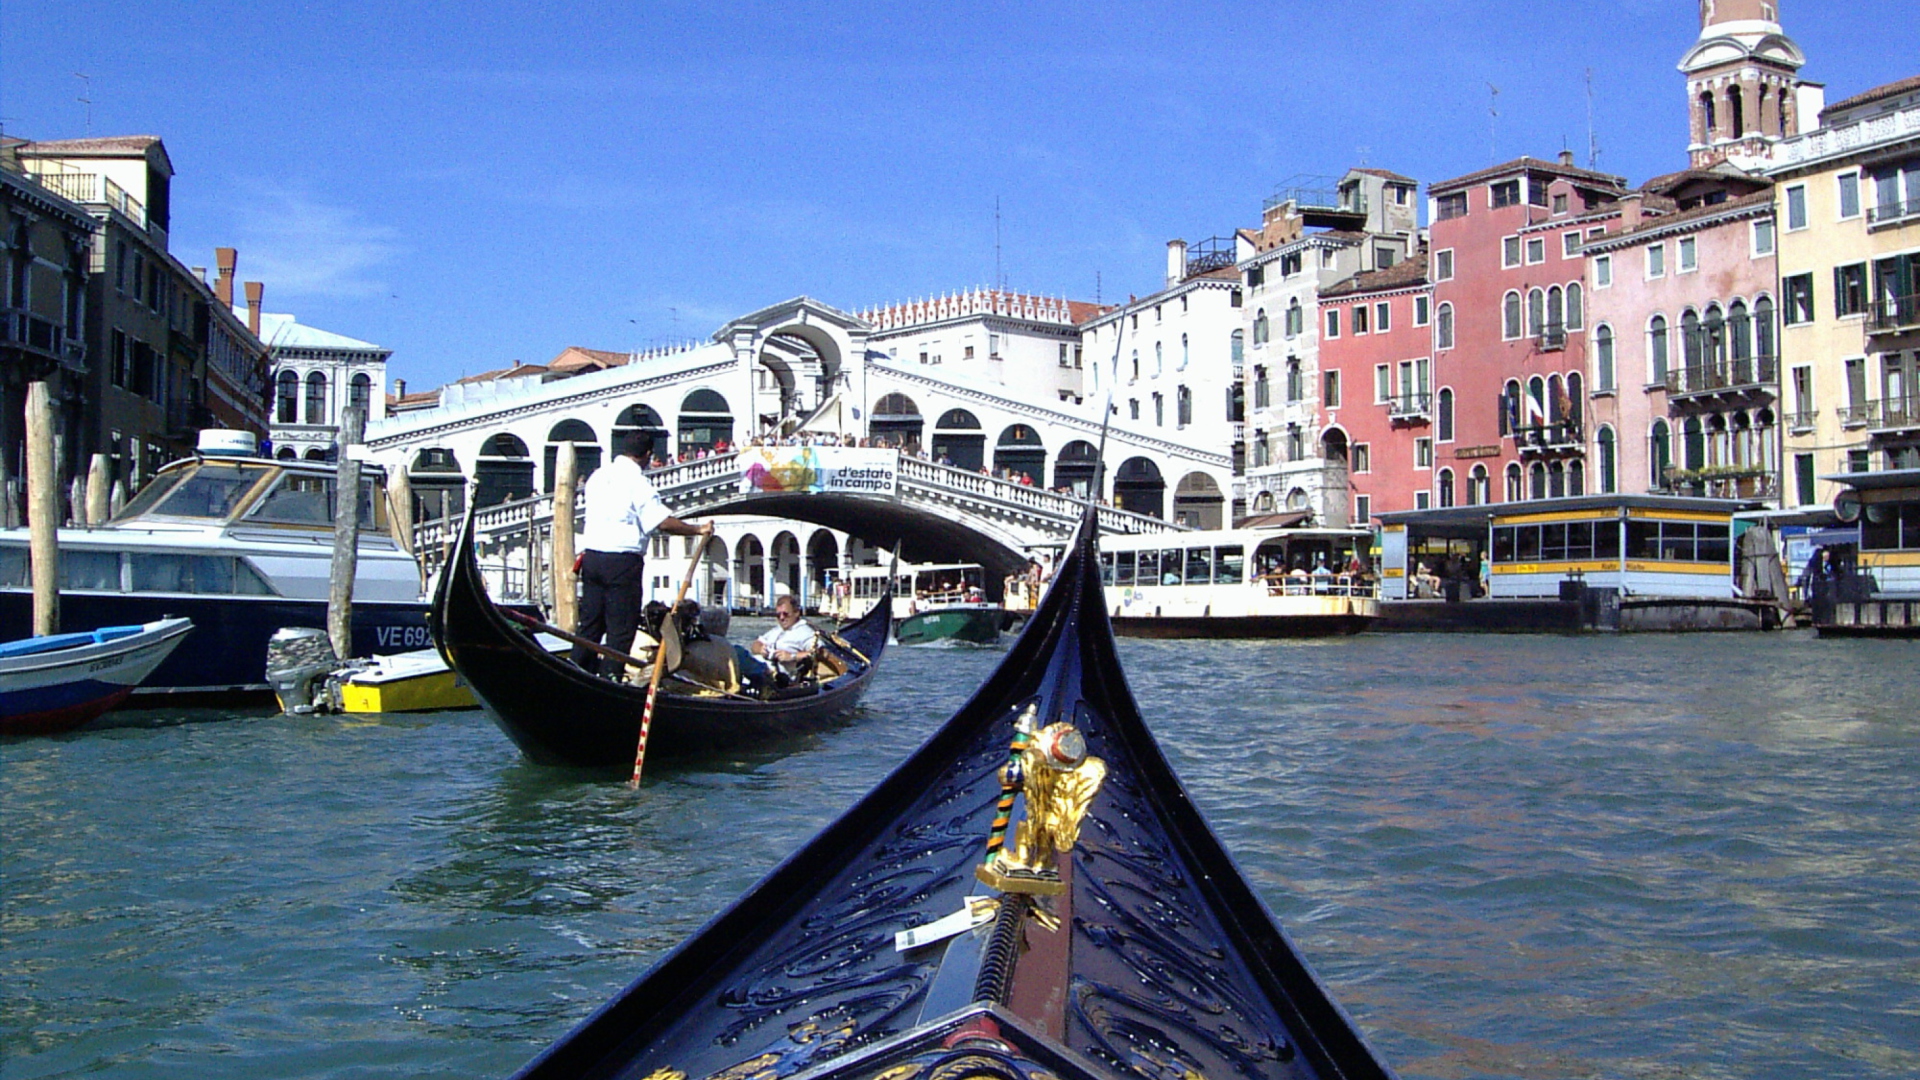 Canals of Venice wallpaper 1920x1080